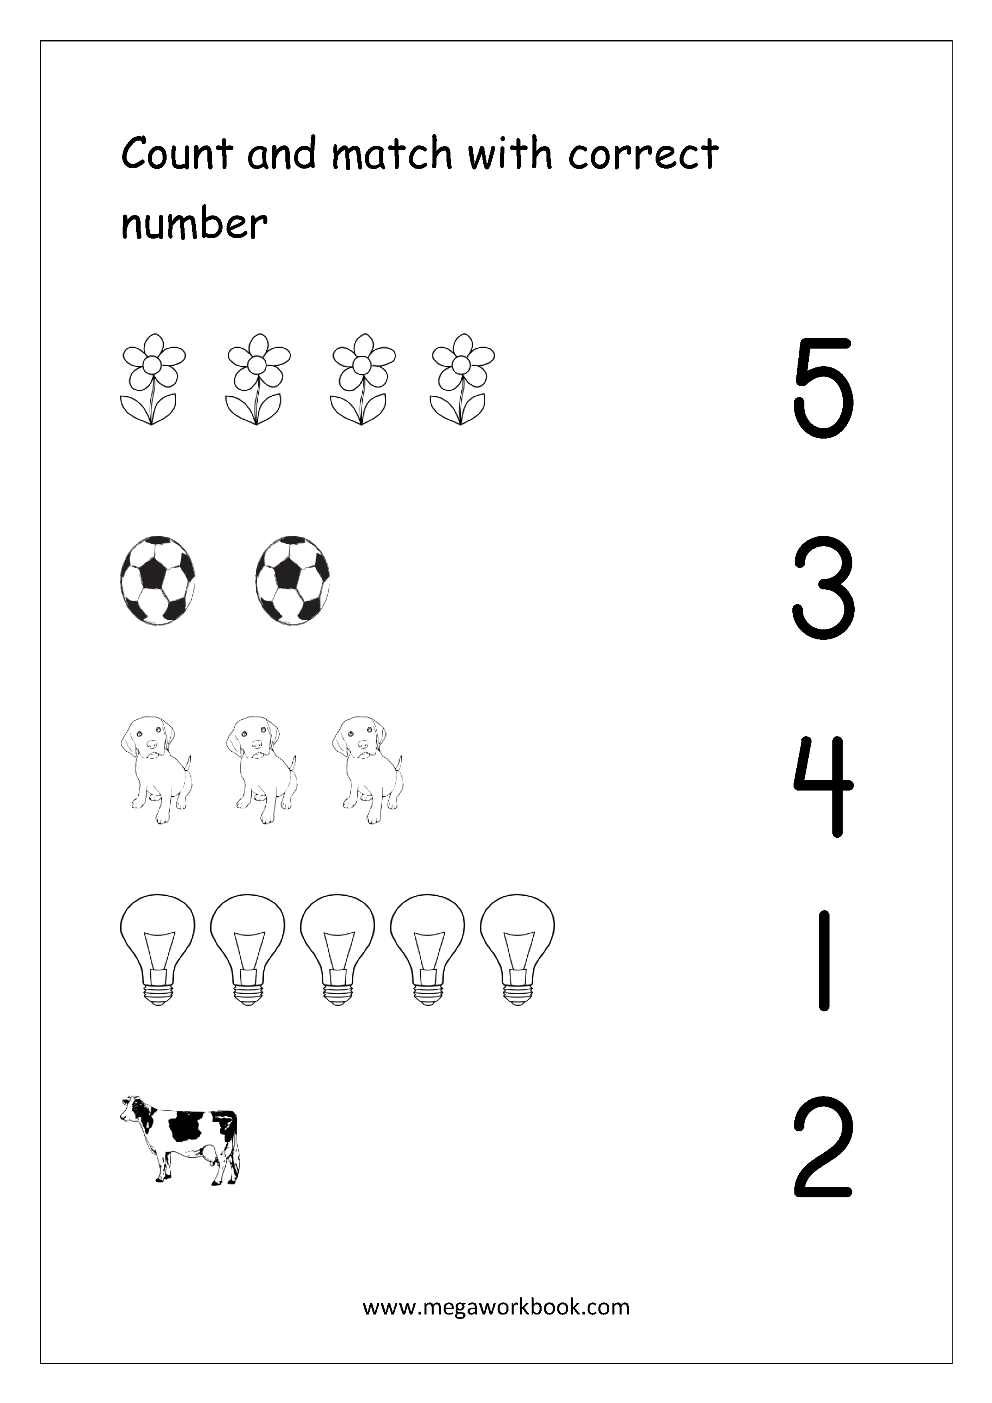 Free Printable Number Matching Worksheets For Kindergarten And - Free Printable Number Worksheets For Kindergarten